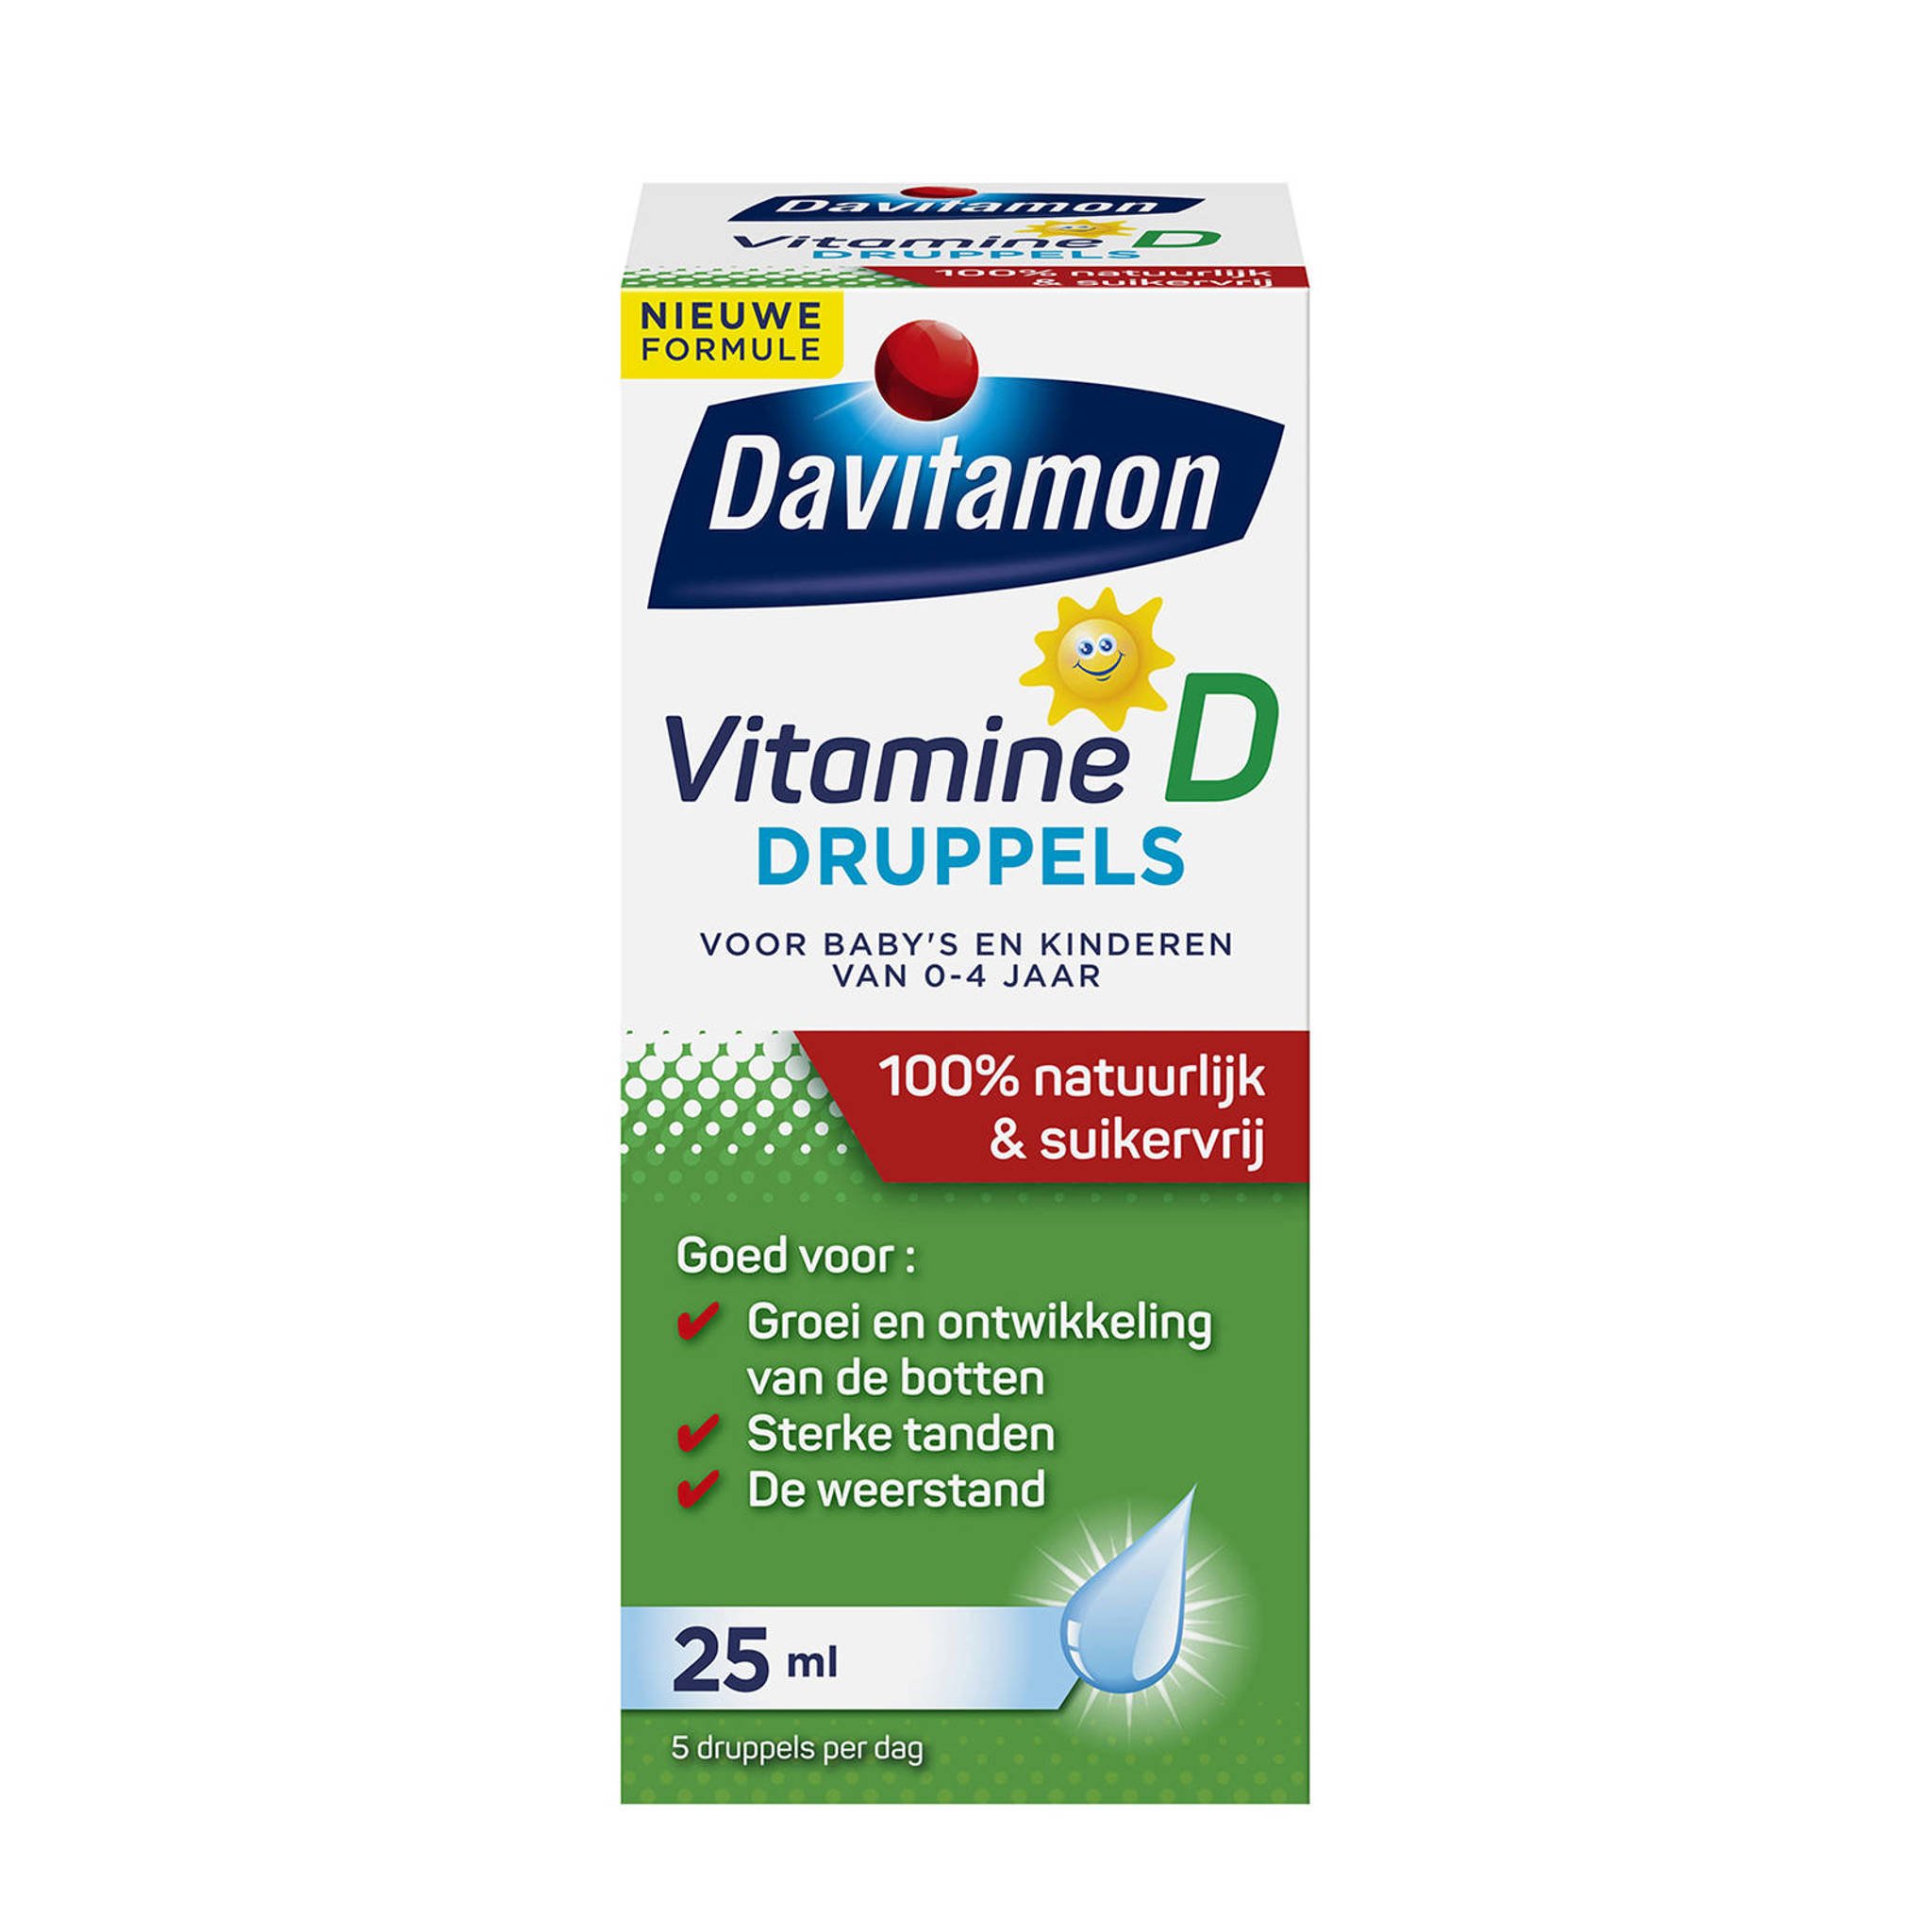 Wiskundige Onafhankelijkheid de jouwe Davitamon Vitamine D druppels zonnebloemolie - 25 ml | wehkamp